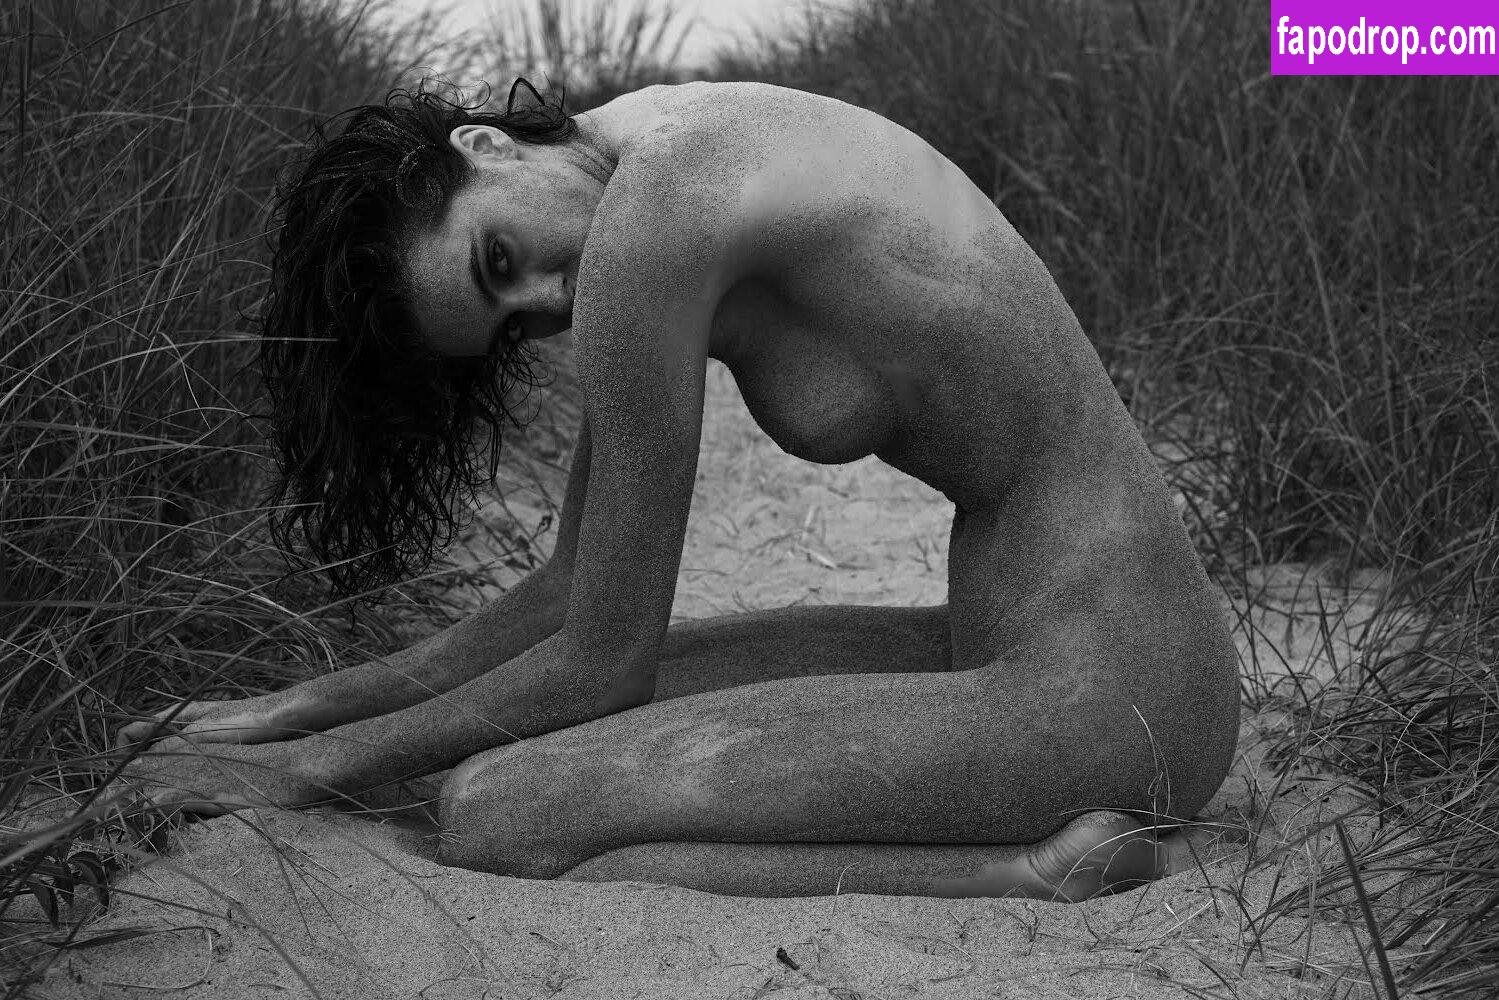 Brooke Deighton / brookedeighton leak of nude photo #0004 from OnlyFans or Patreon